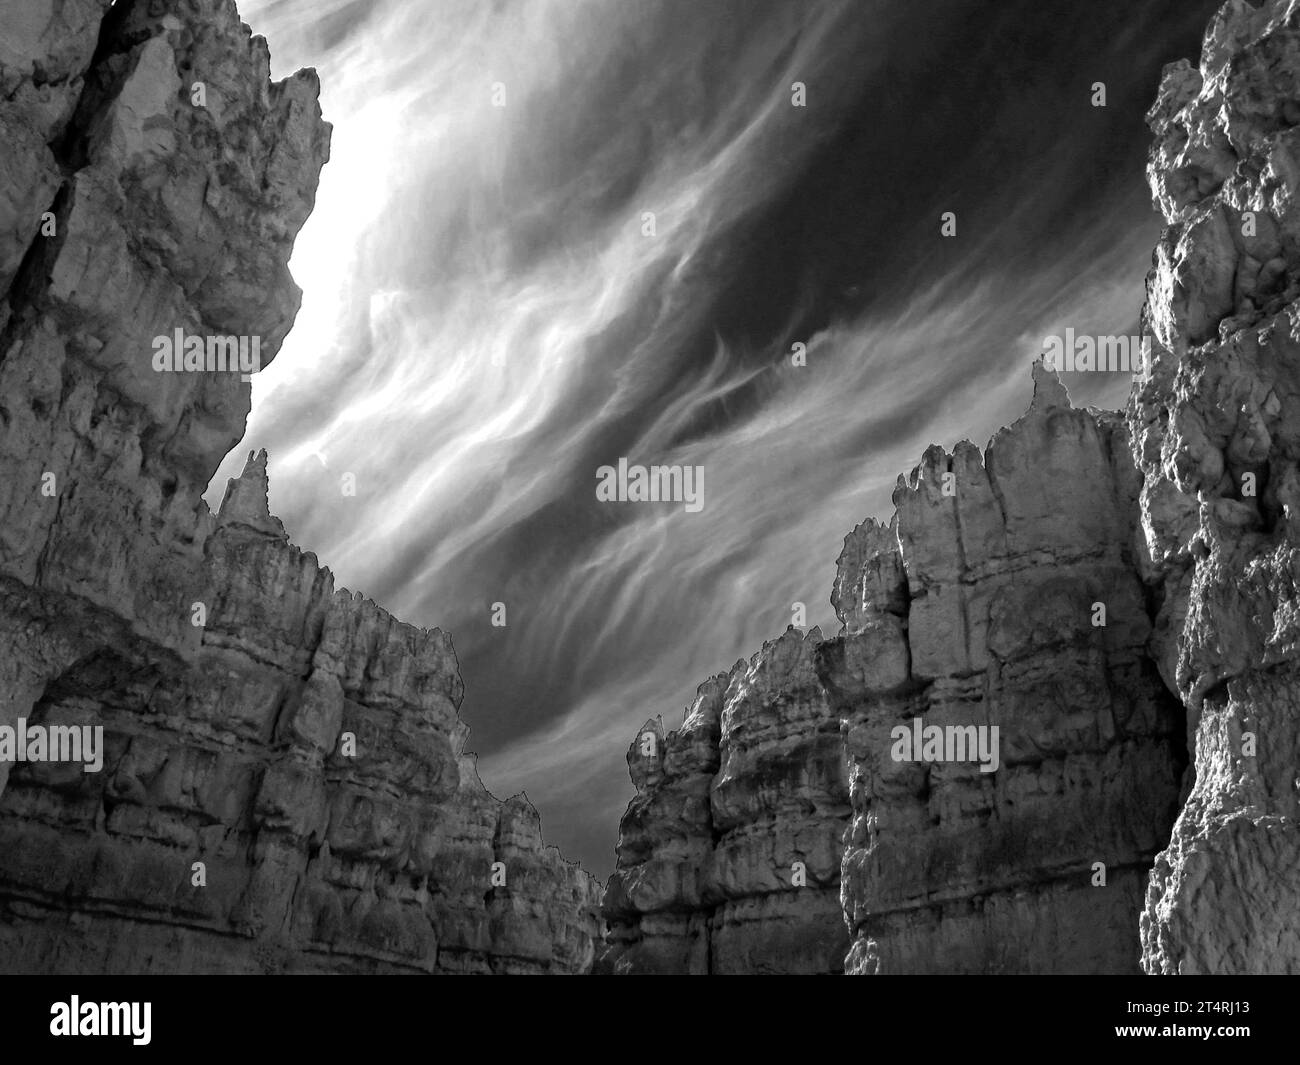 Vue sinistre en noir et blanc des nuages de cirrus avec les hautes falaises calcaires et les hoodoos de Bryce Canyon au premier plan. Banque D'Images